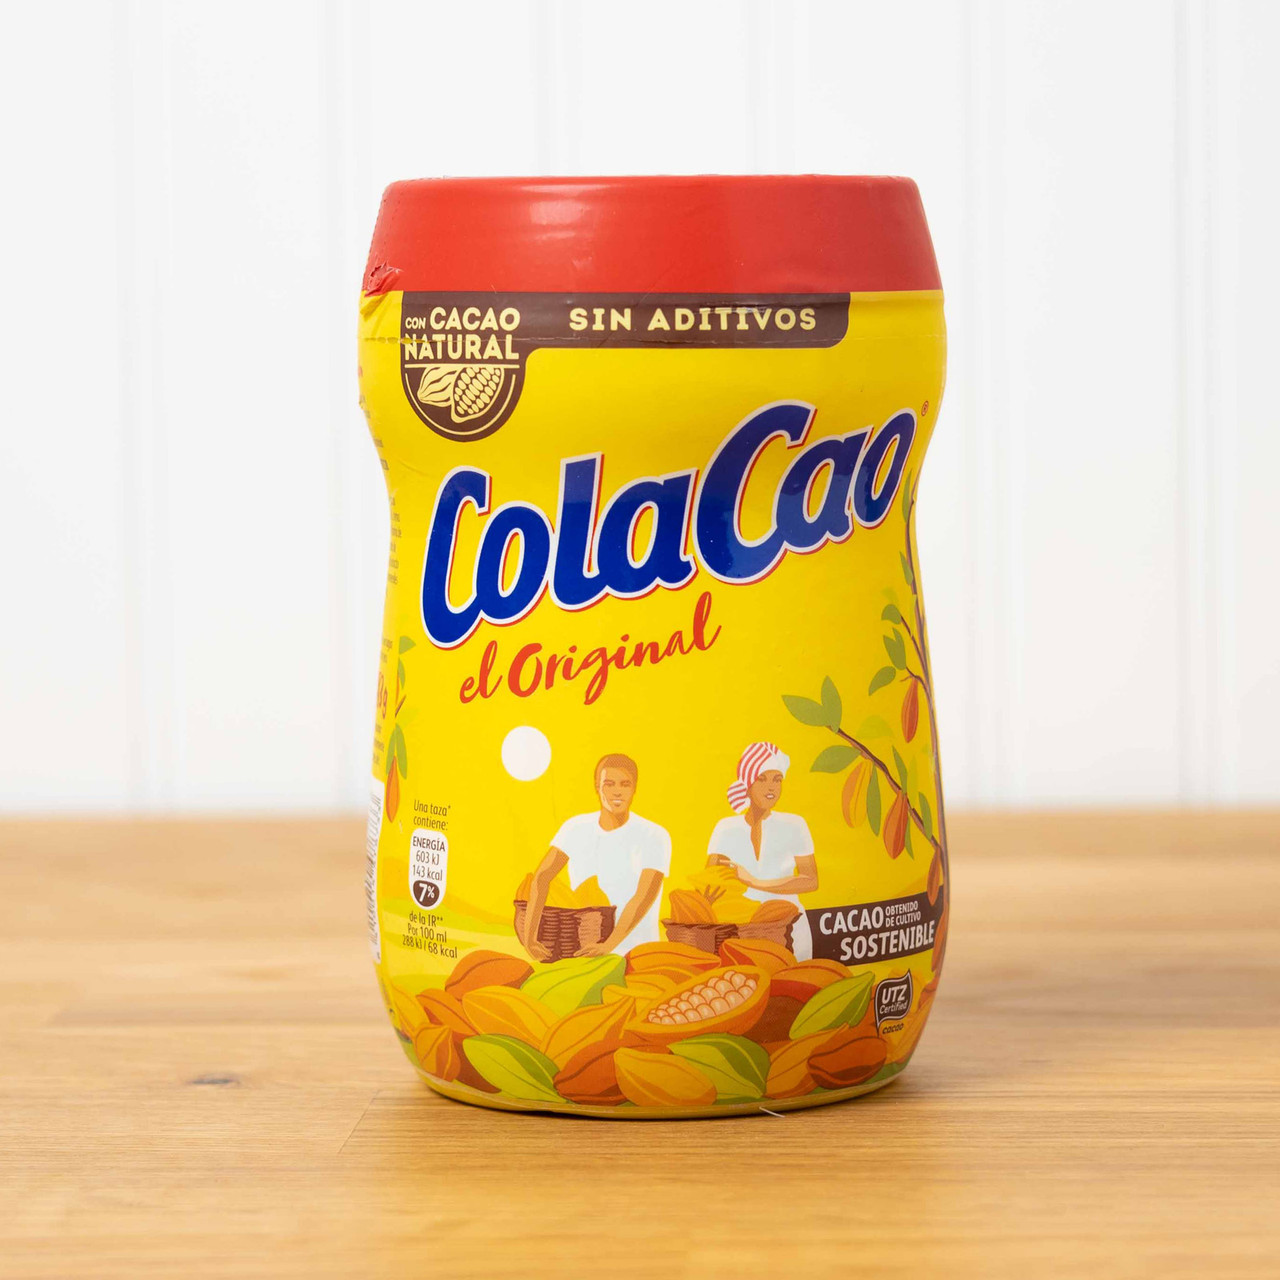 Original Cola Cao Chocolate Drink Mix (13.76 ounces/390 grams)